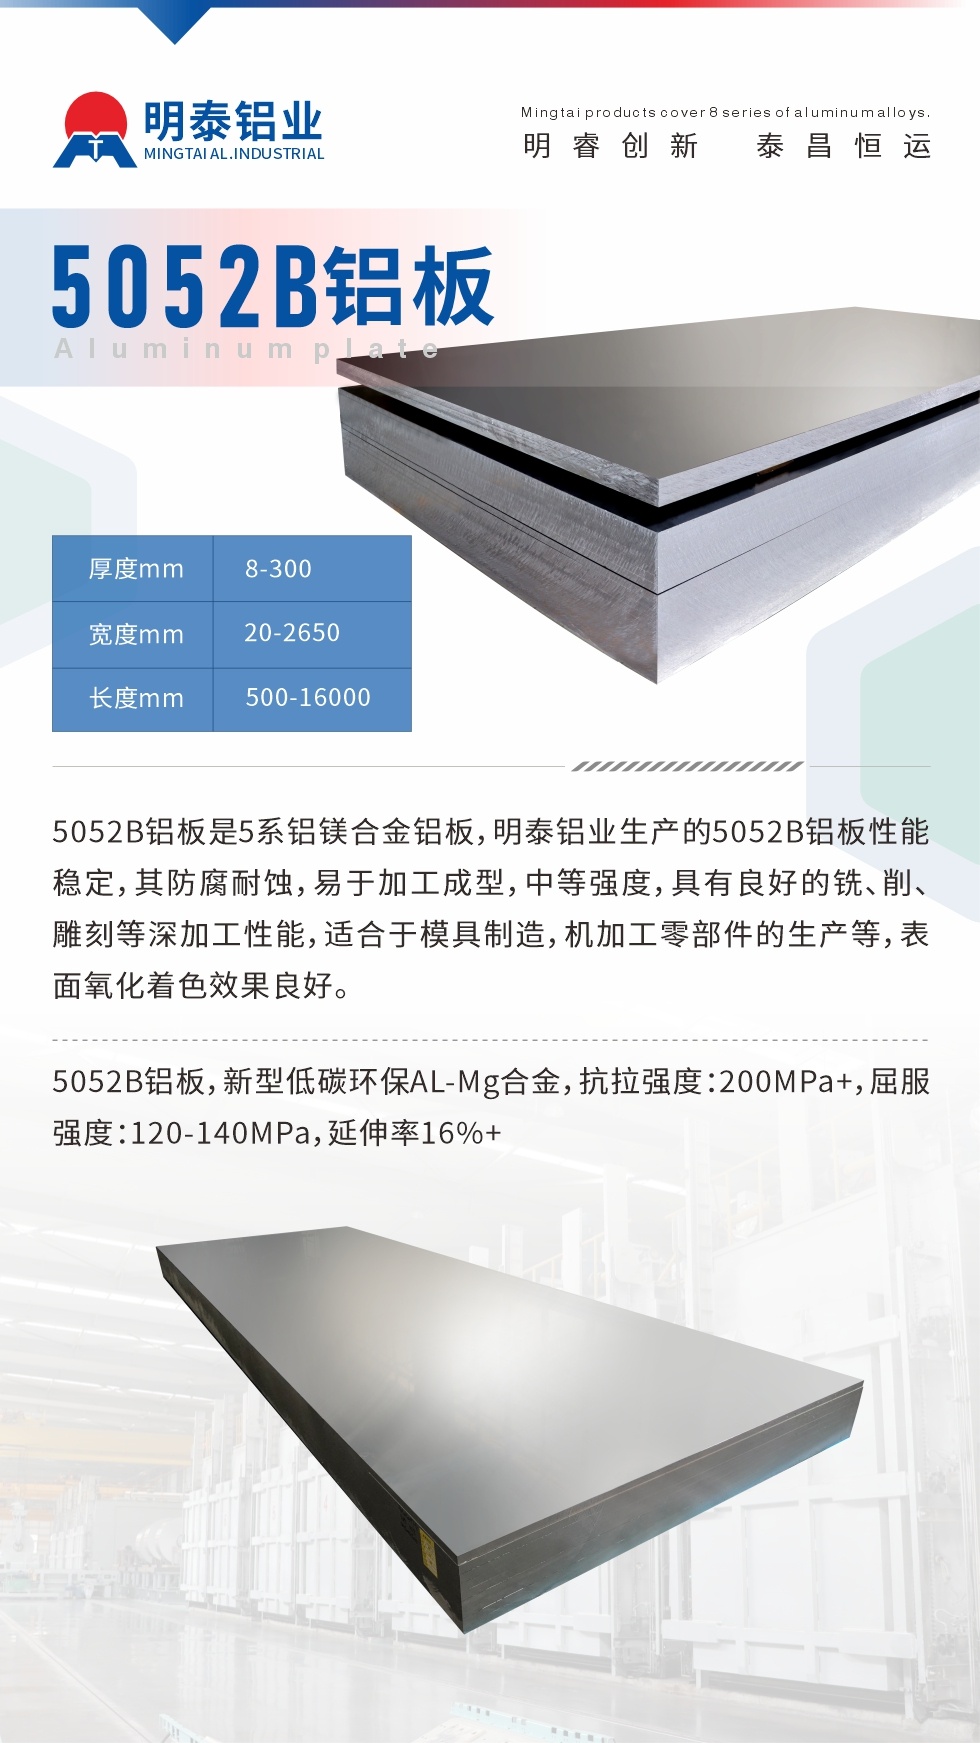 5052B铝板是5系铝镁合金铝板，耀世铝业生产的5052B铝板性能稳定，其防腐耐蚀，易于加工成型，中等强度，具有良好的铣、削、雕刻等深加工性能，适合于模具制造，机加工零部件的生产等，表面氧化着色效果良好。5052B铝板，新型低碳环保AL-Mg合金，抗拉强度：200MPa+，屈服强度：120-140MPa，延伸率16%+